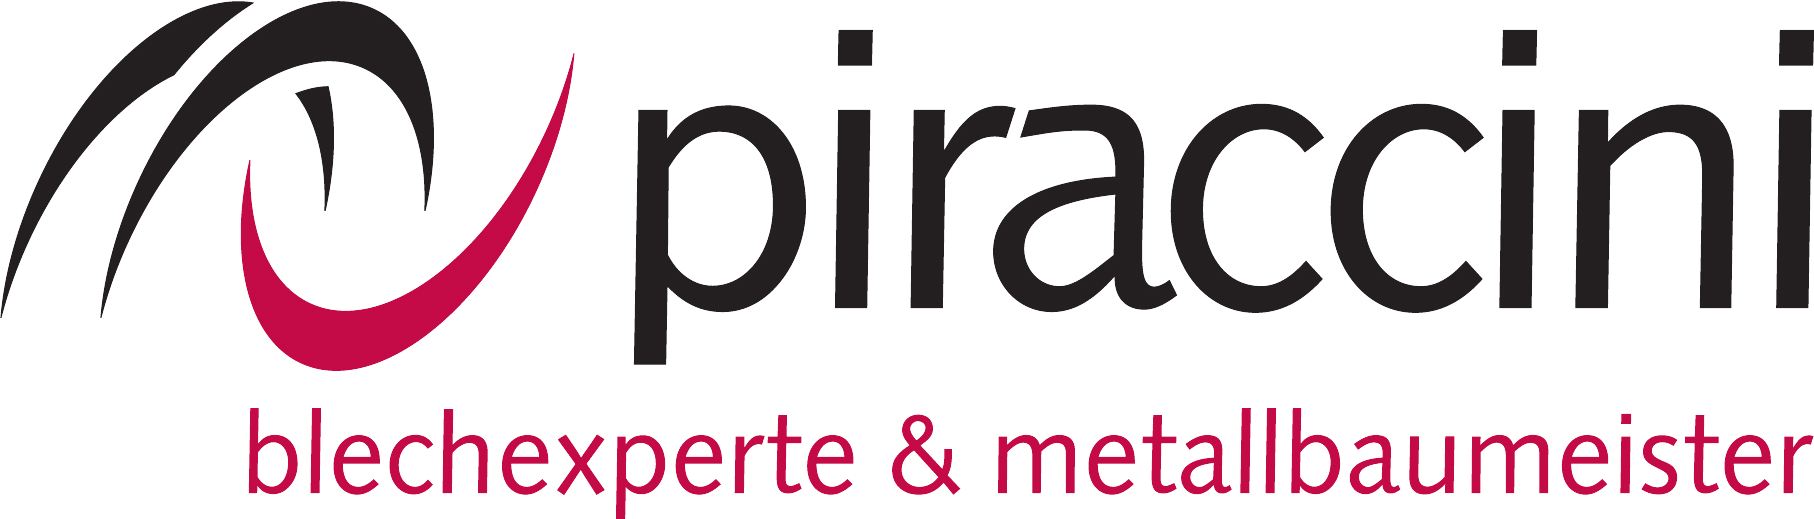 Piraccini-Logo